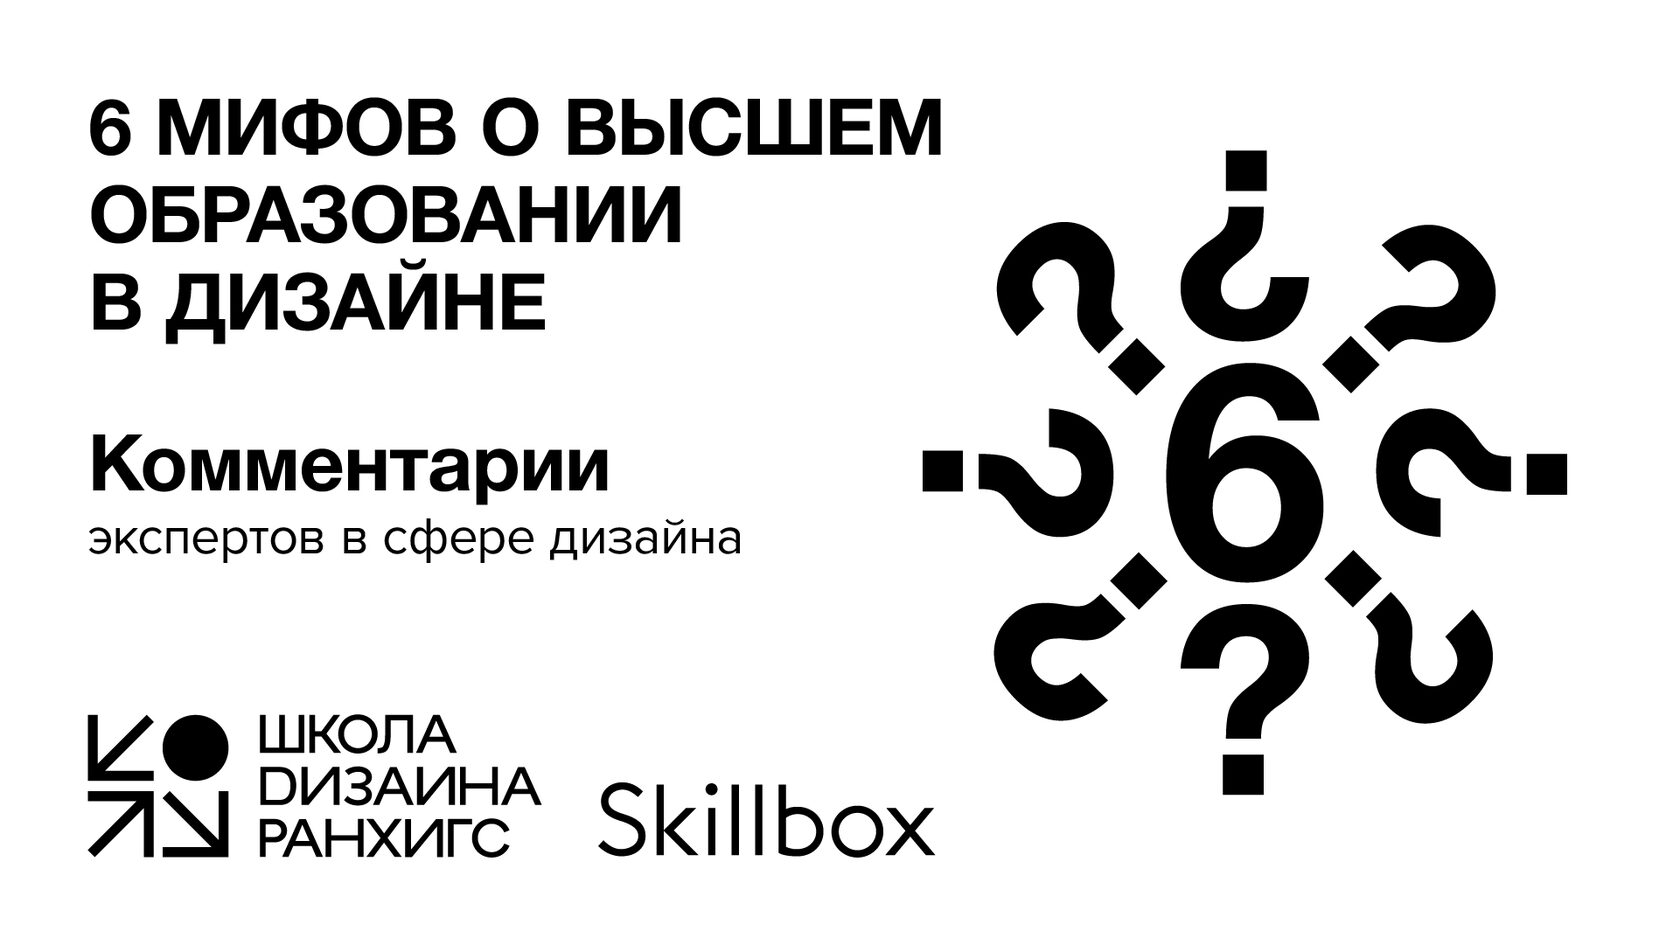 Дизайн офиса - вопросы и ответы - Елена Солохина, дизайнер интерьера